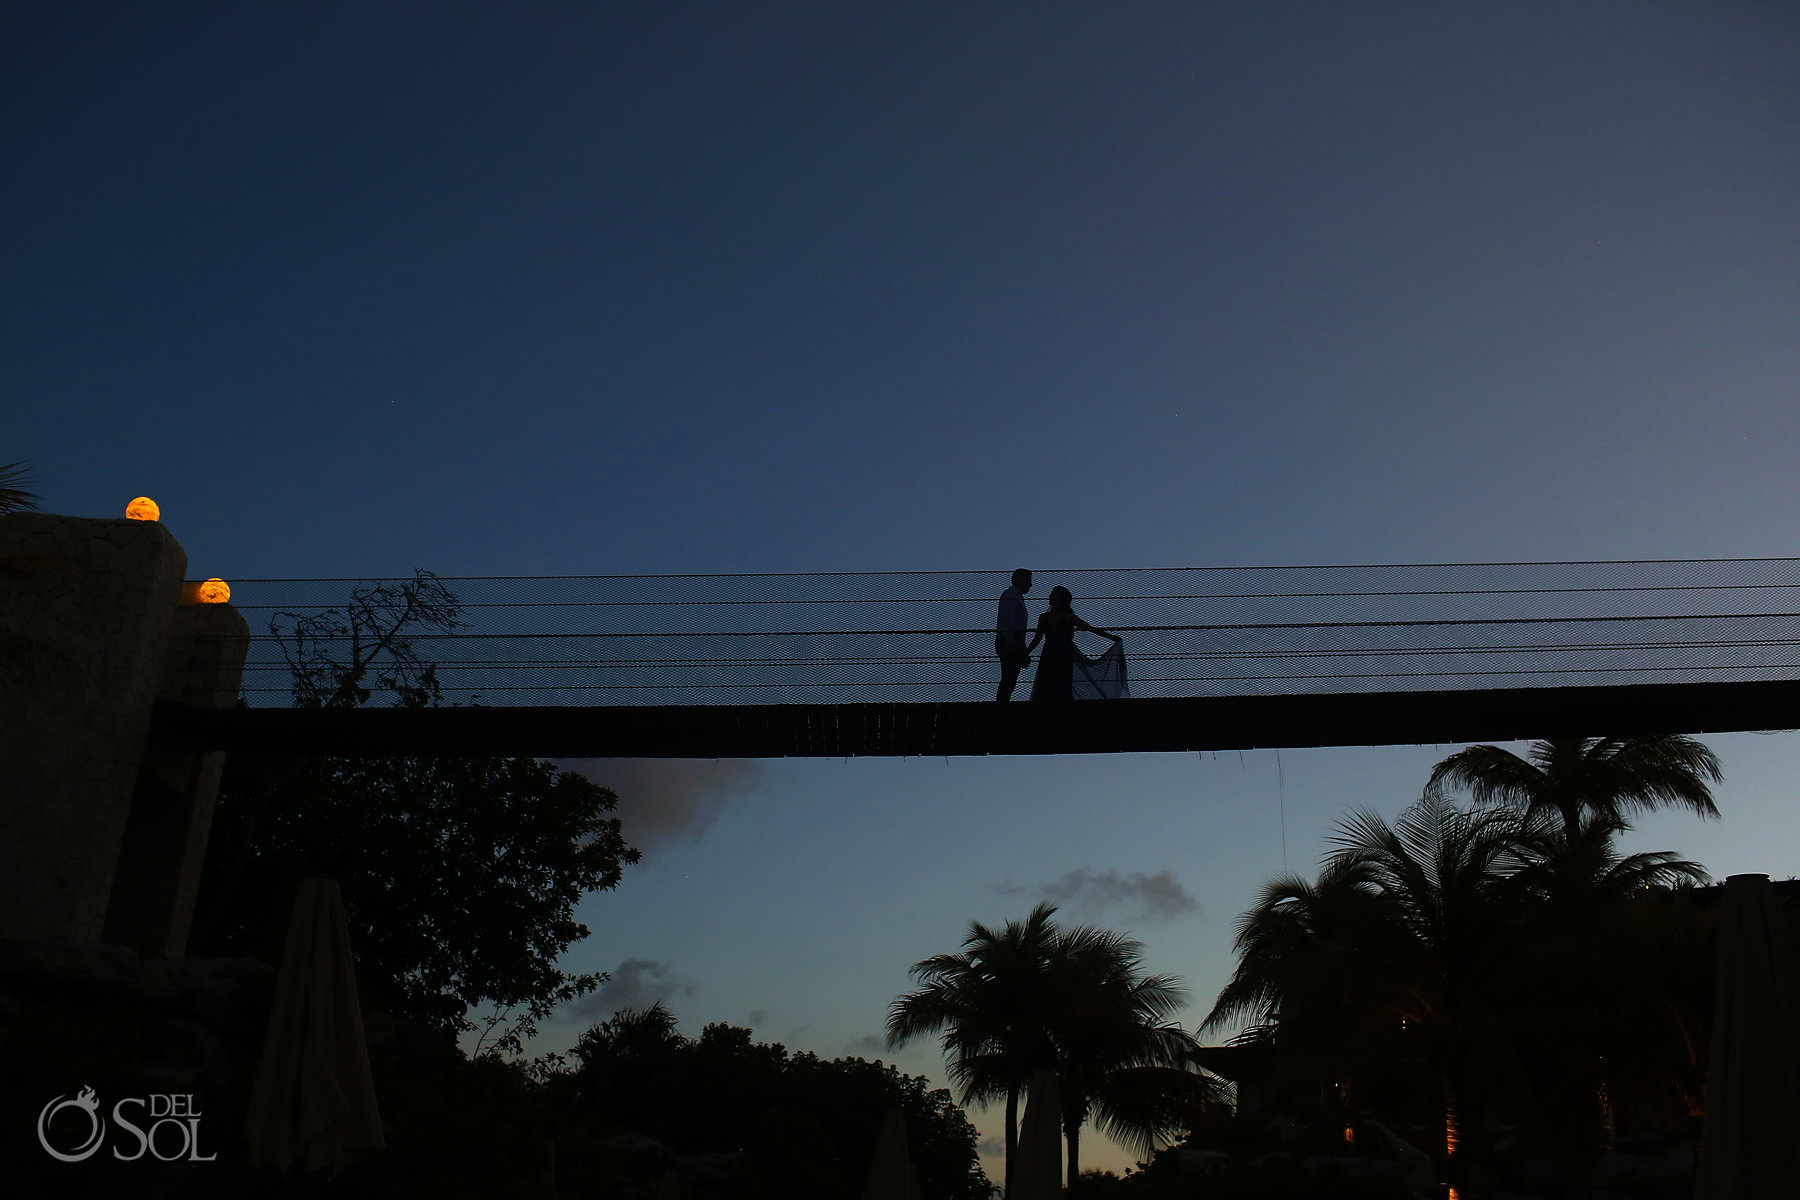 Hotel Xcaret Mexico suspension bridges 